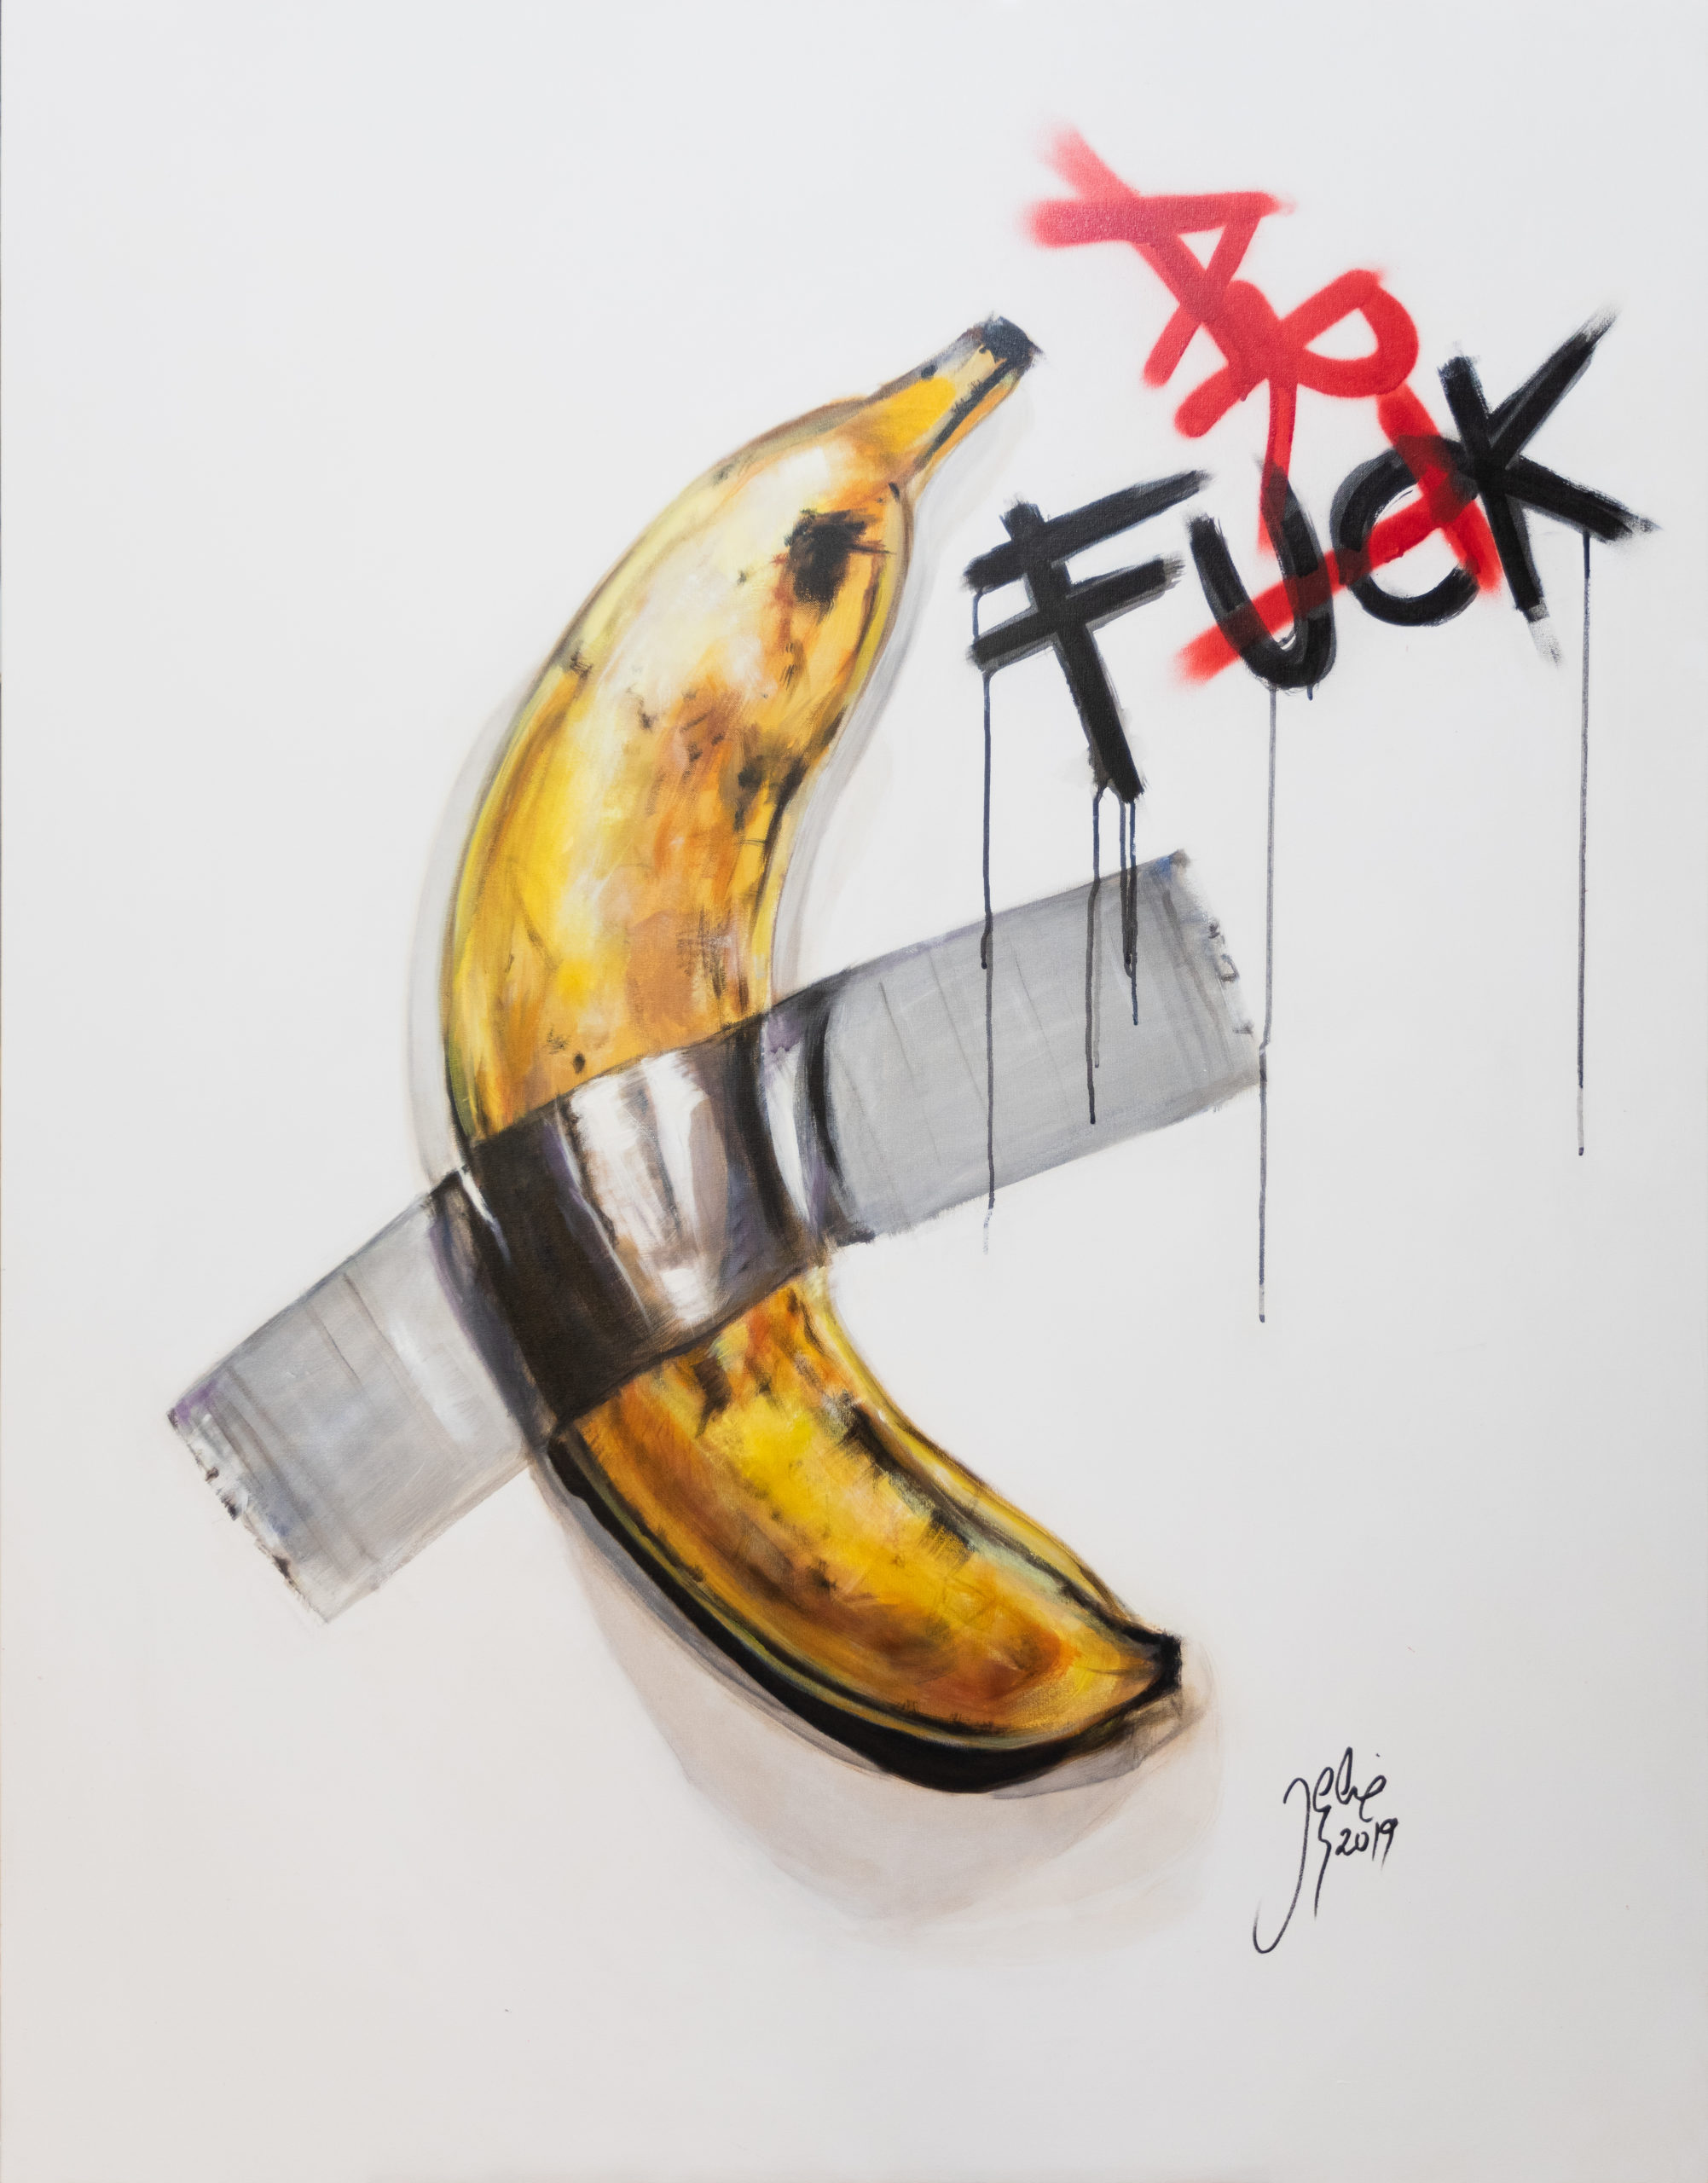 FUCK ART